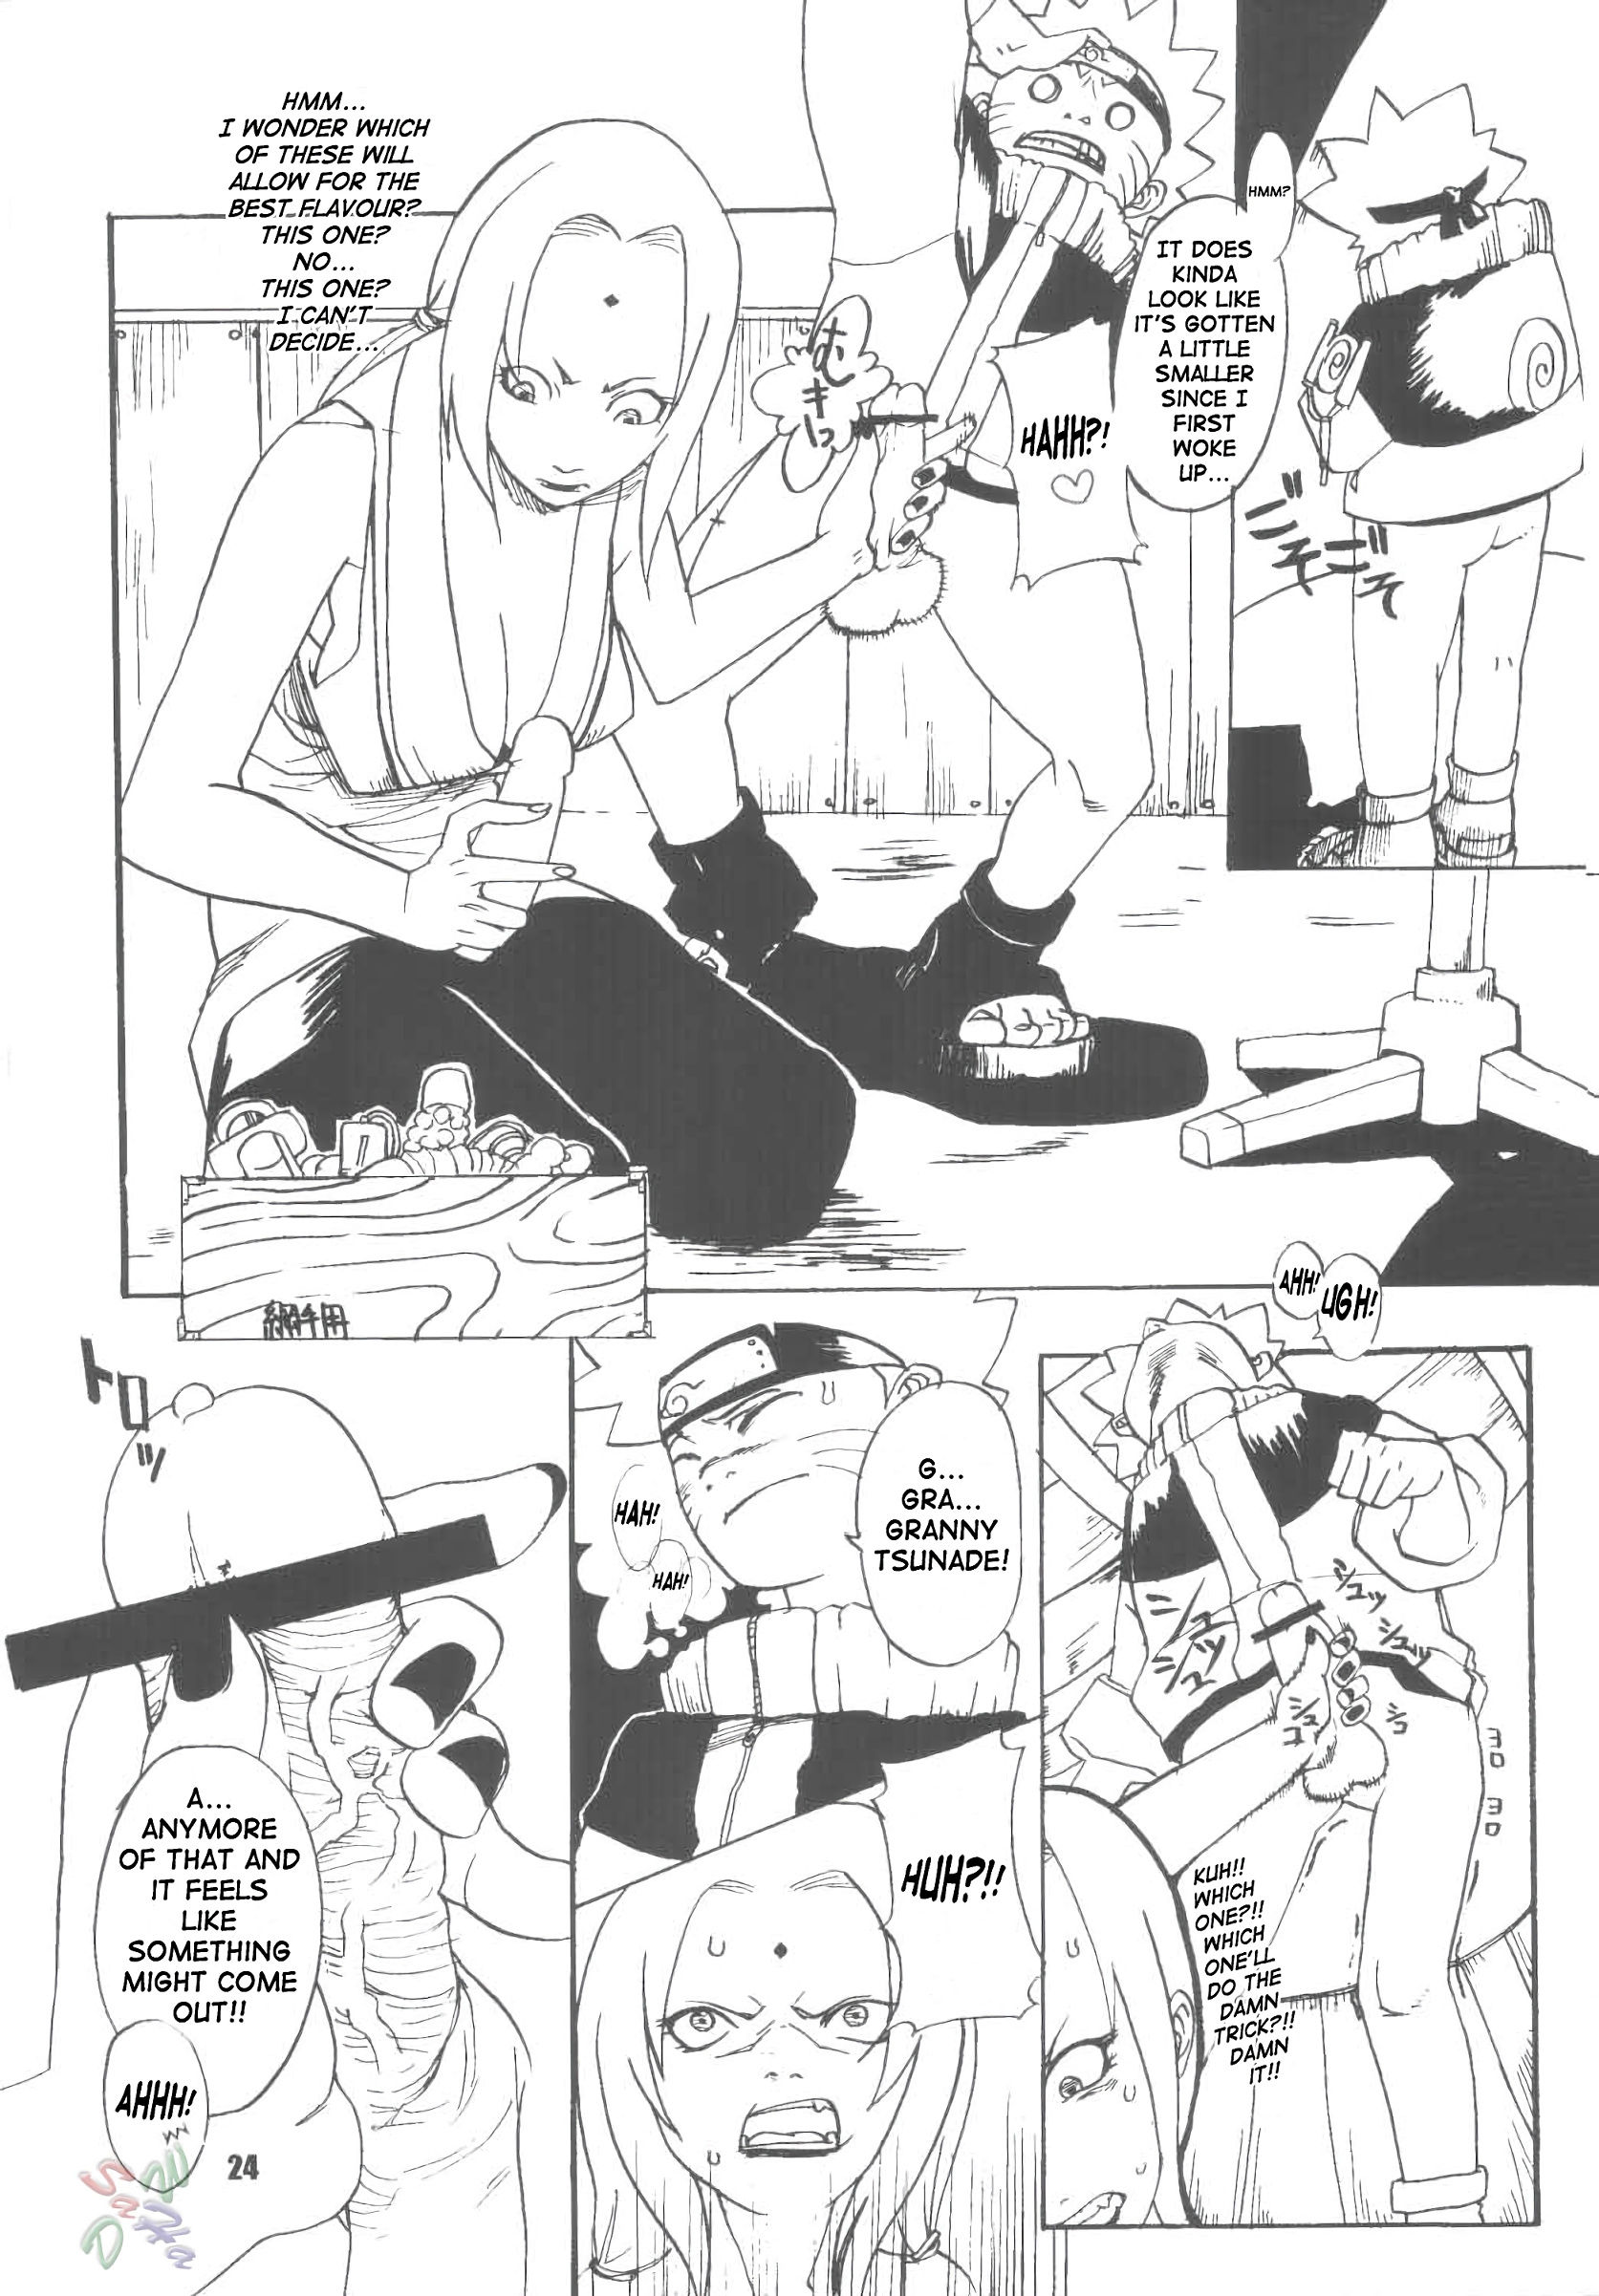 Janbo mochi hentai manga picture 22